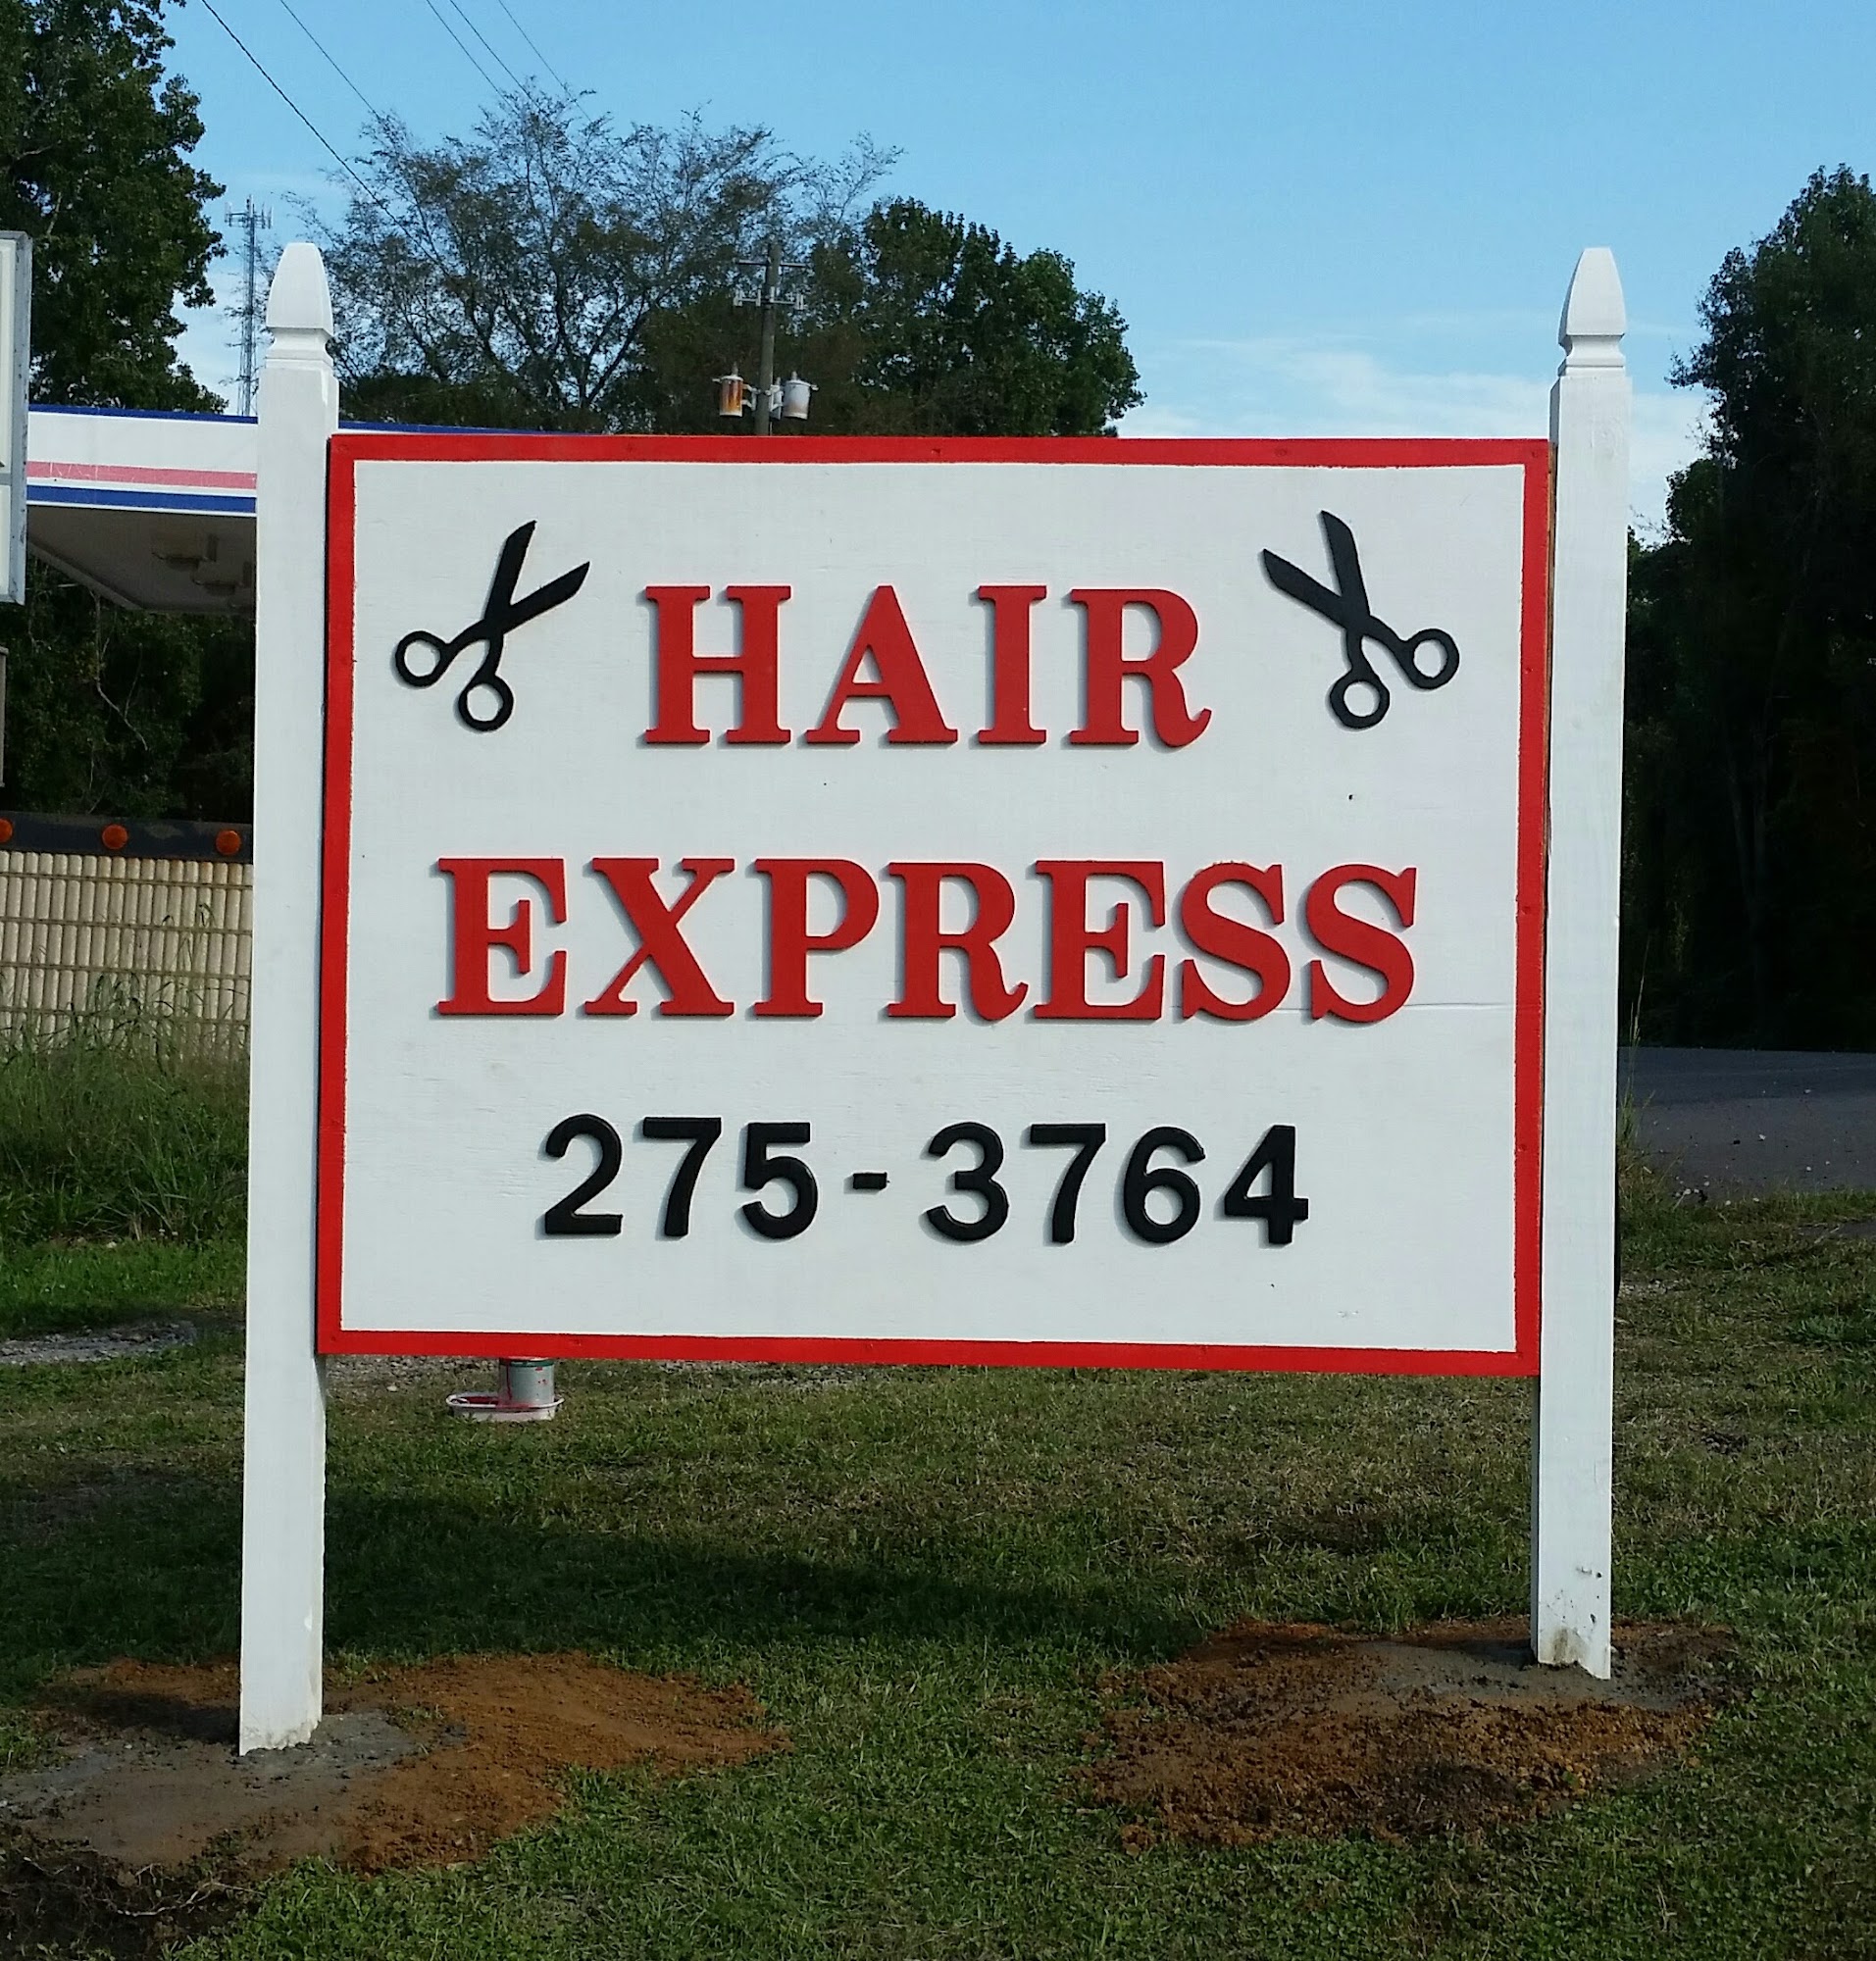 Hair Express 12191 AL-269, Parrish Alabama 35580